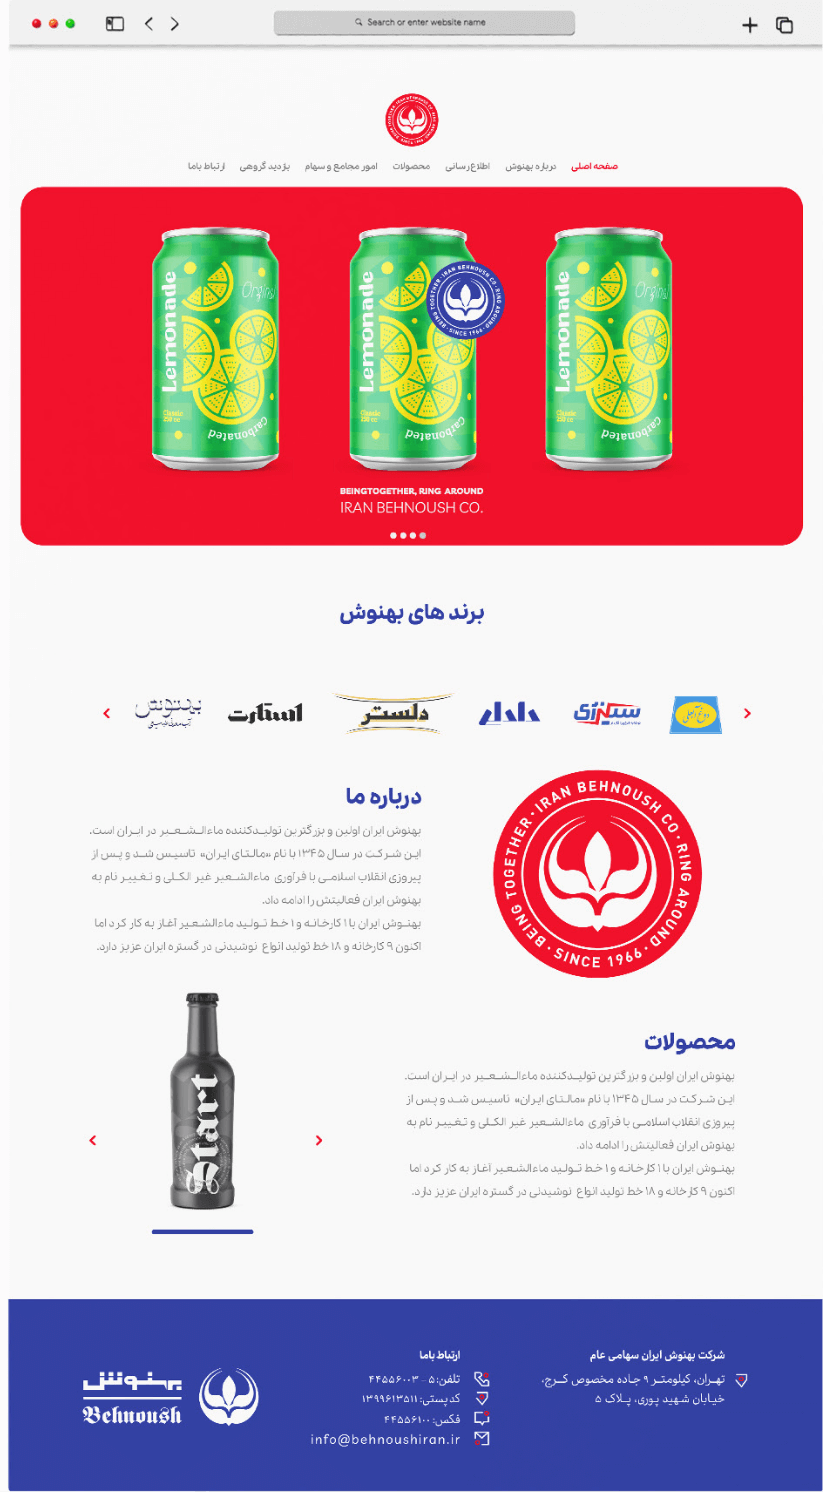 طراحی برندینگ و استراتژی بازطراحی محصولات بهنوش - استودیو نهاکی Branding & RePackaging strategy Behnoush Iran - nahaki studio